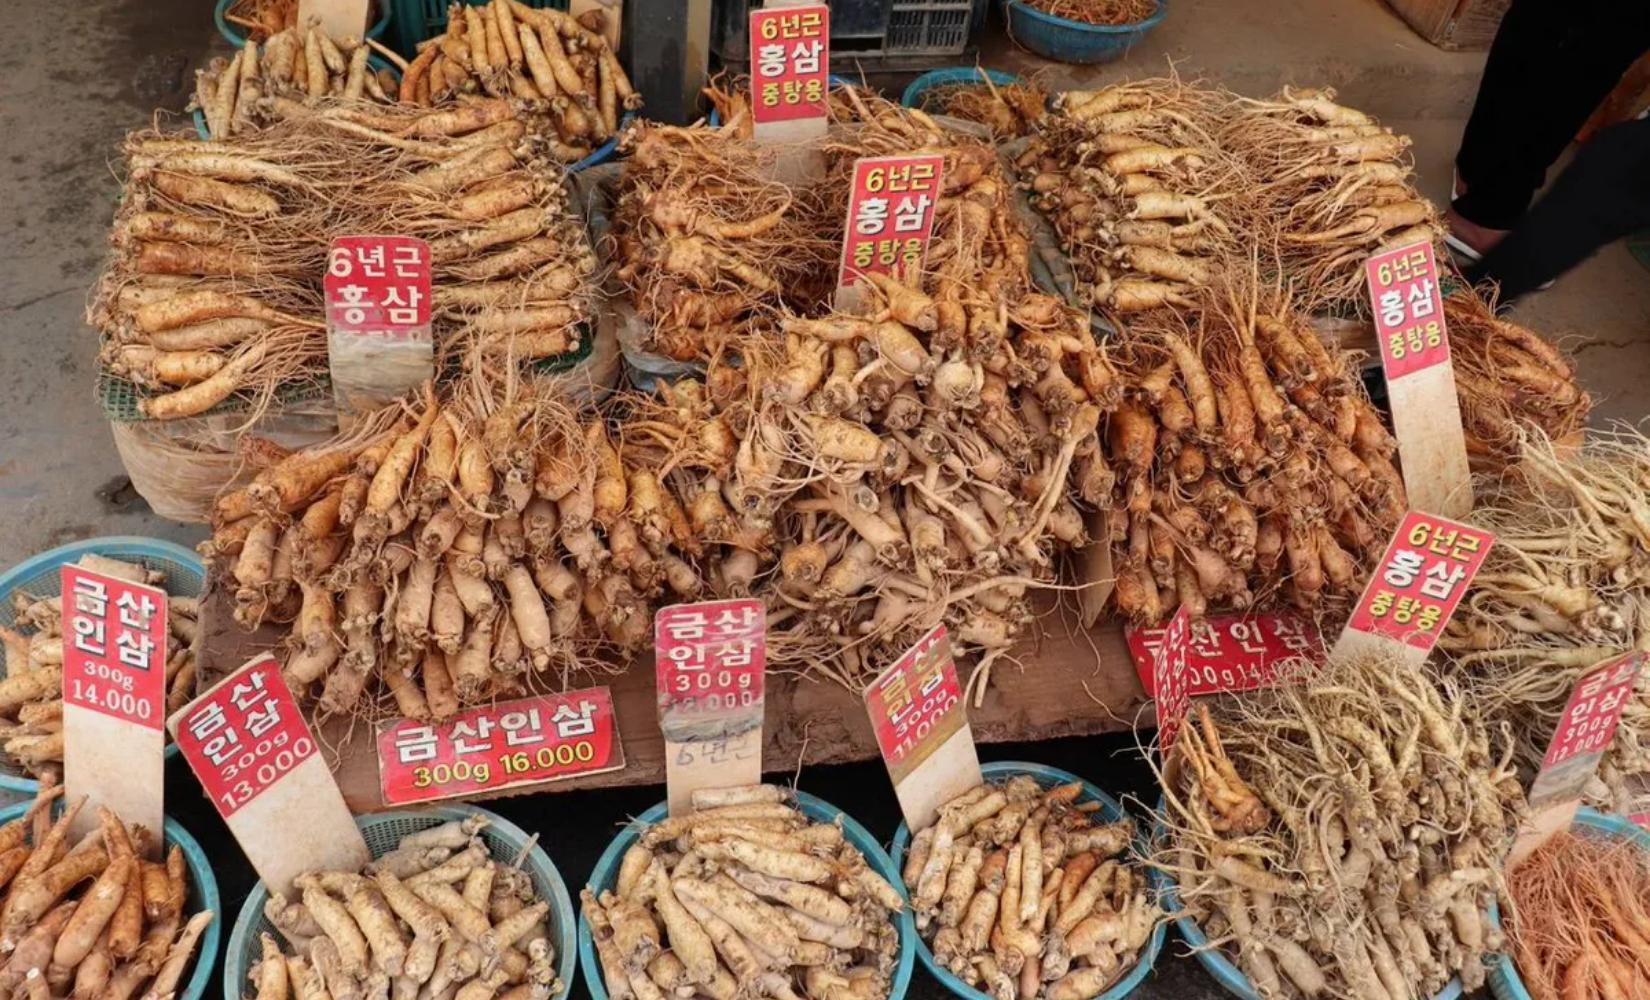 5 chợ sâm nổi tiếng ở Hàn Quốc bán sâm chính hiệu với giá phải chăng